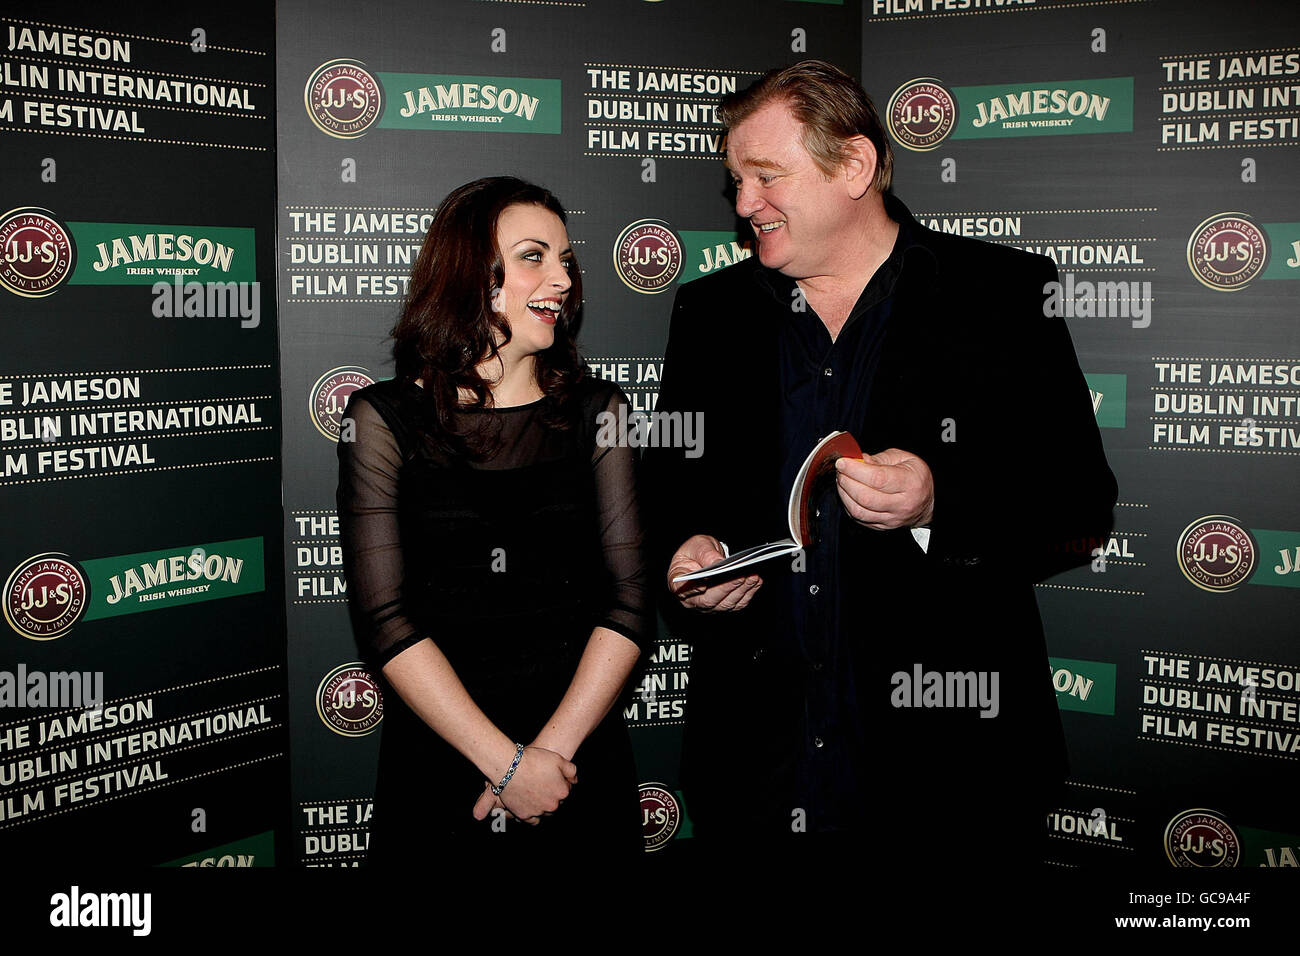 L'actrice irlandaise Nora-Jane Noone star de la nouvelle vedette Savage avec l'acteur Brendan Gleeson à un photocall dans le Merrion Hotel Dublin, pour le lancement du Jameson Dublin International film Festival 2010. Banque D'Images